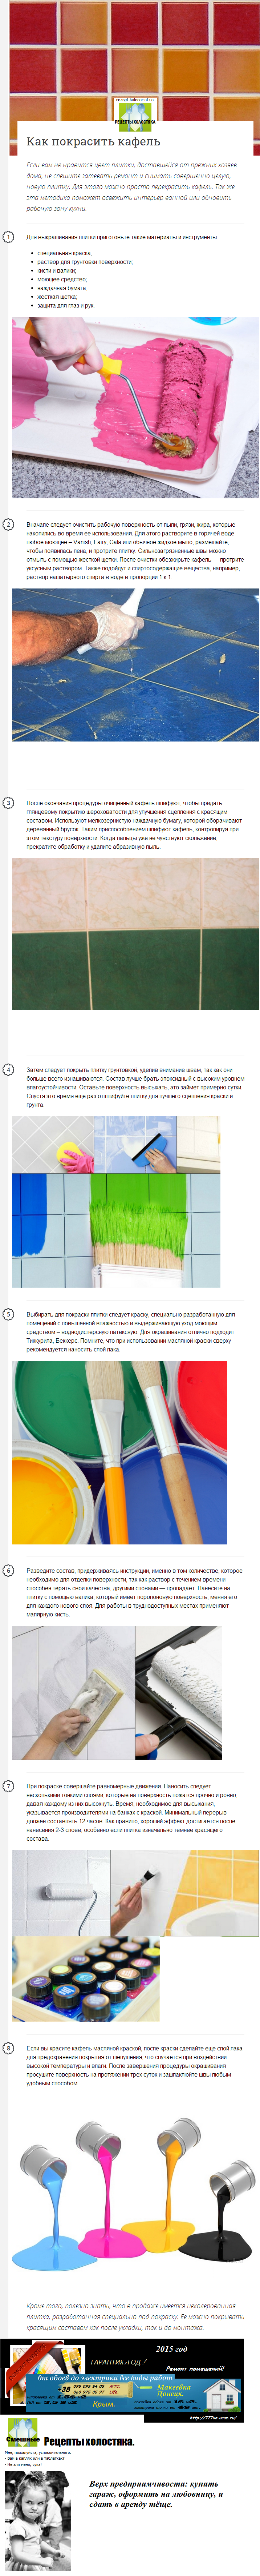 Как покрасить кафель,Покраска керамической плитки, (инструкция с фото)